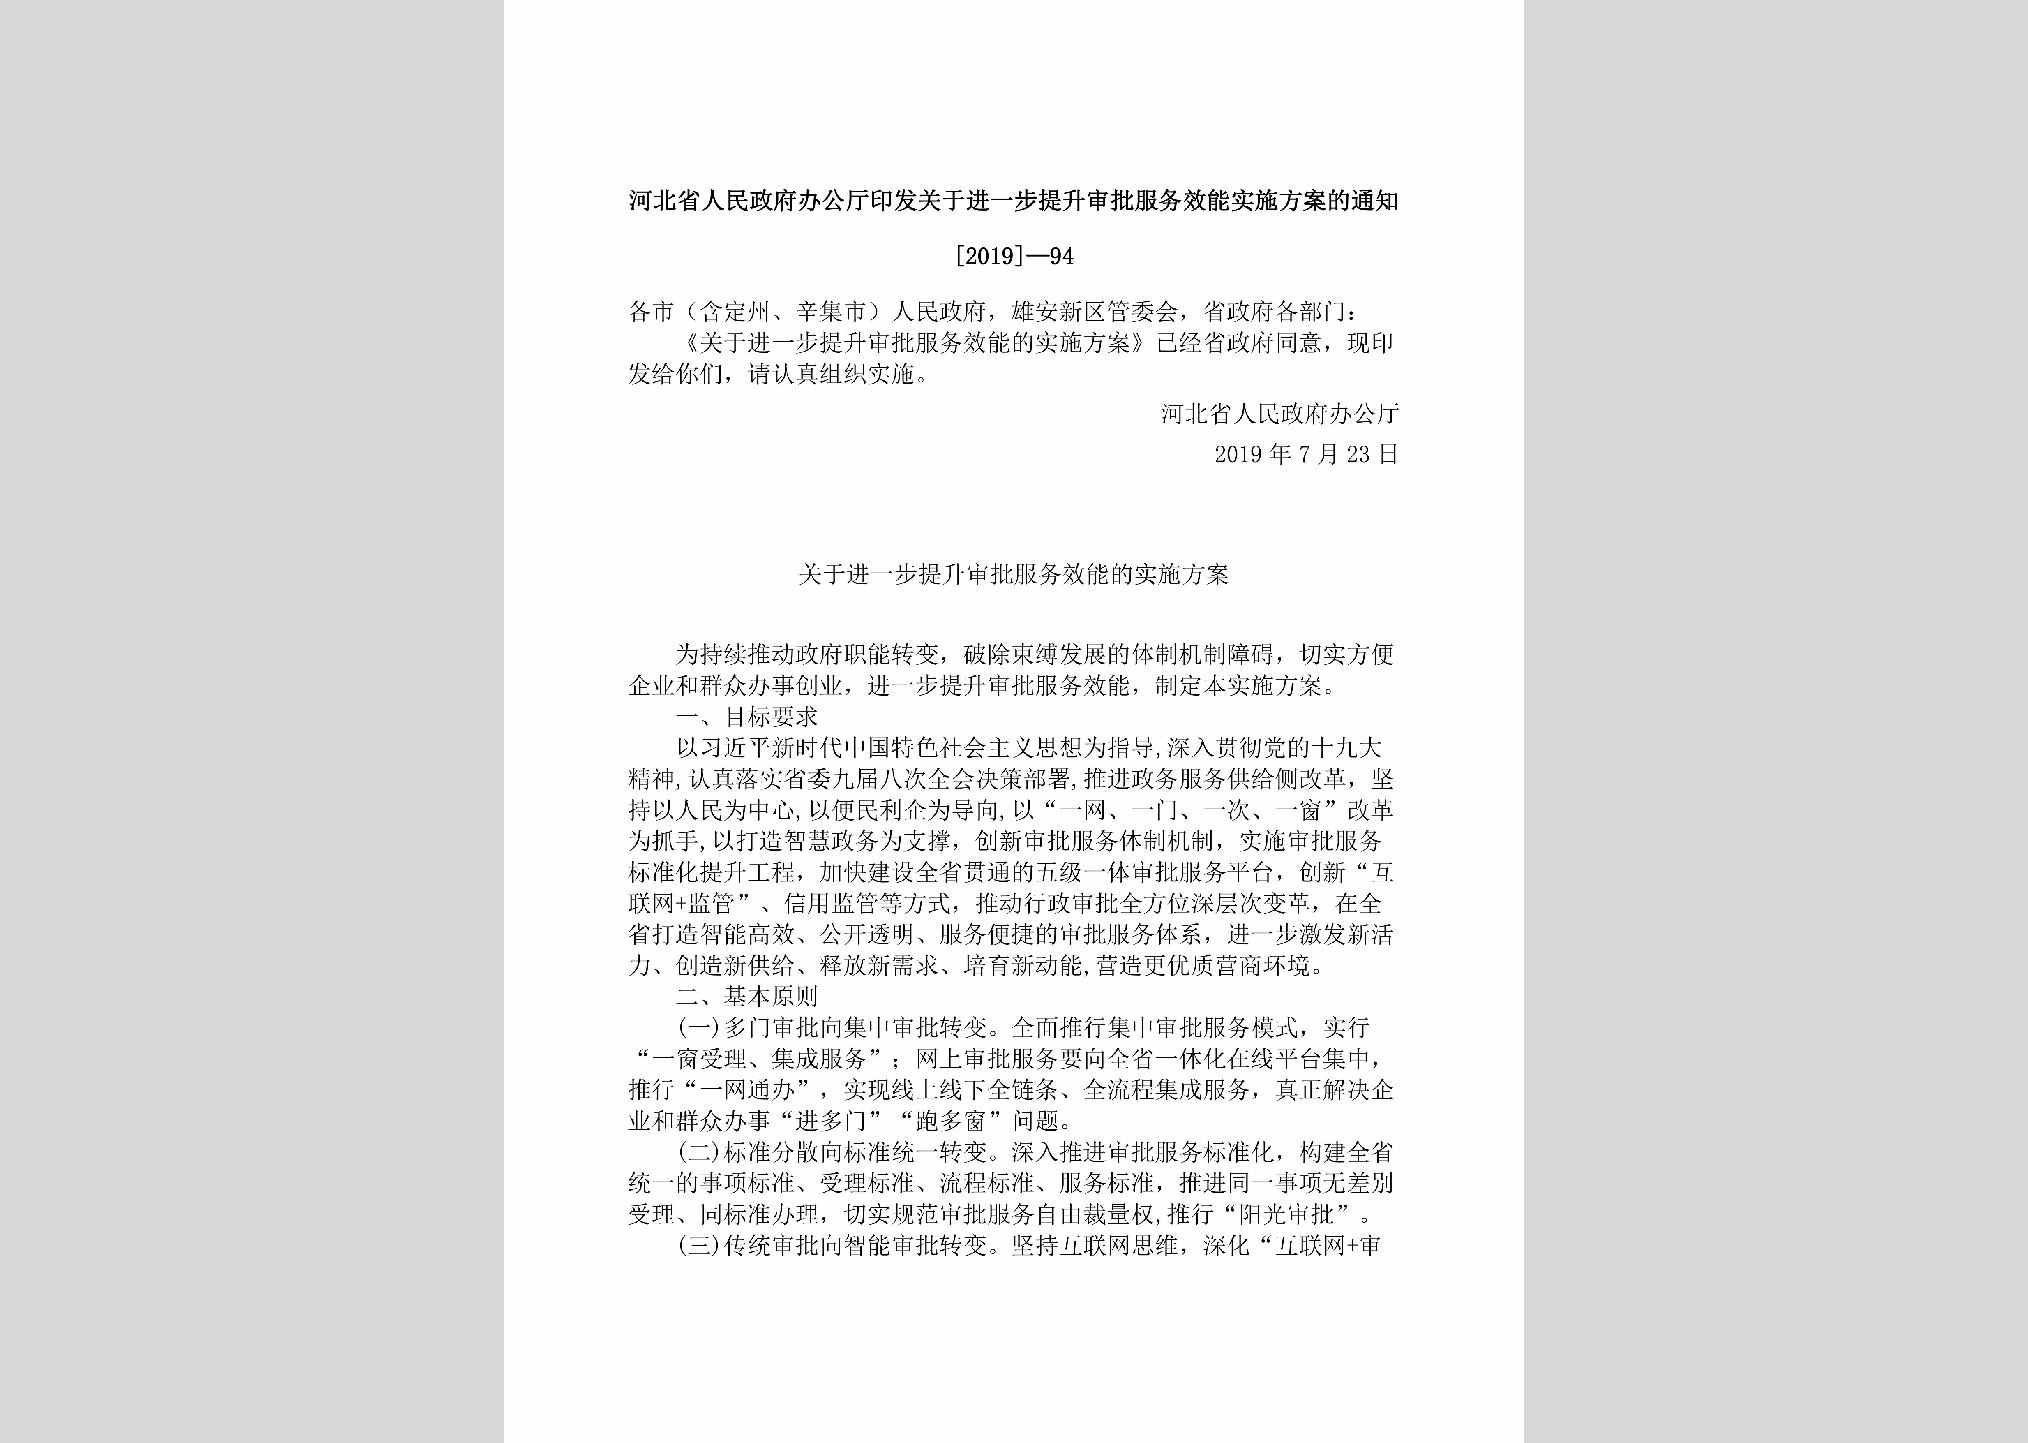 [2019]-94：河北省人民政府办公厅印发关于进一步提升审批服务效能实施方案的通知